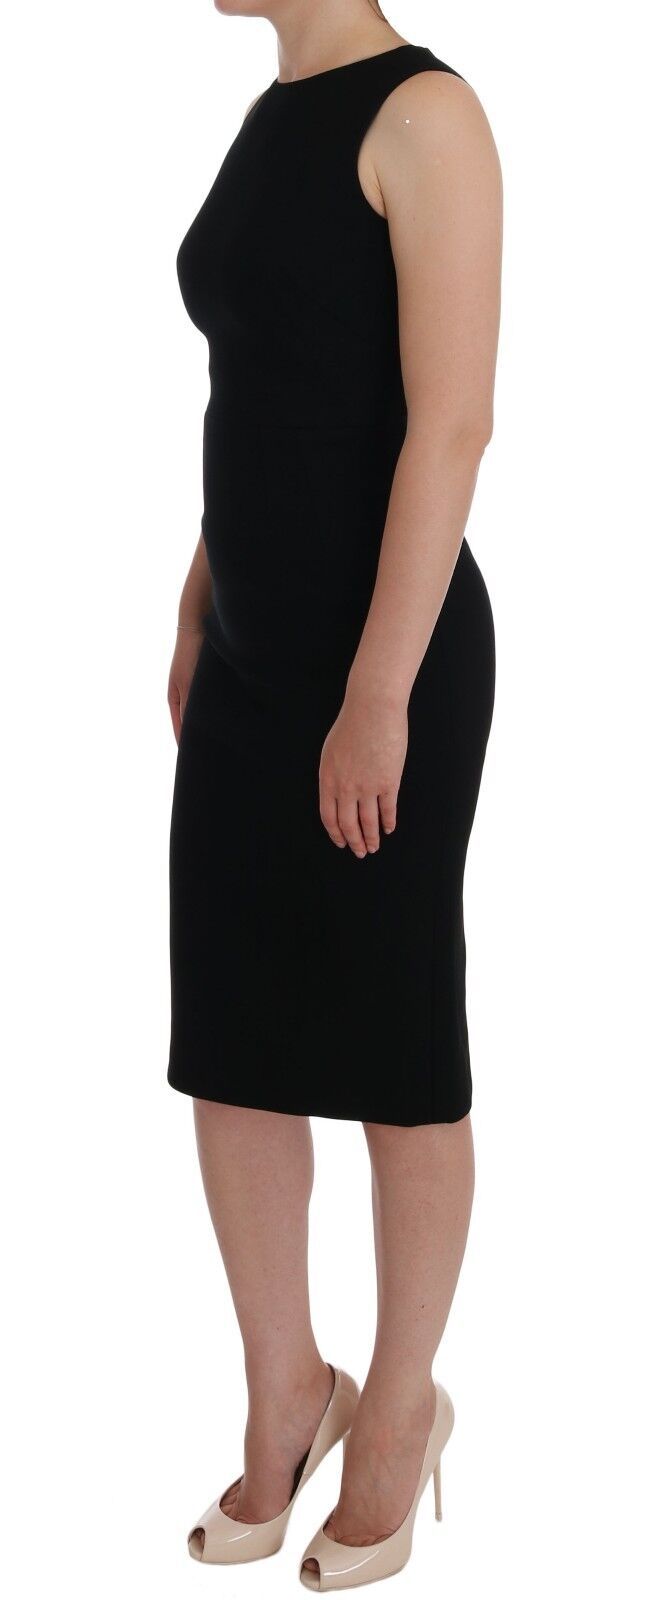 Dolce & Gabbana Black Stretch Kristallscheide Kleid Kleid